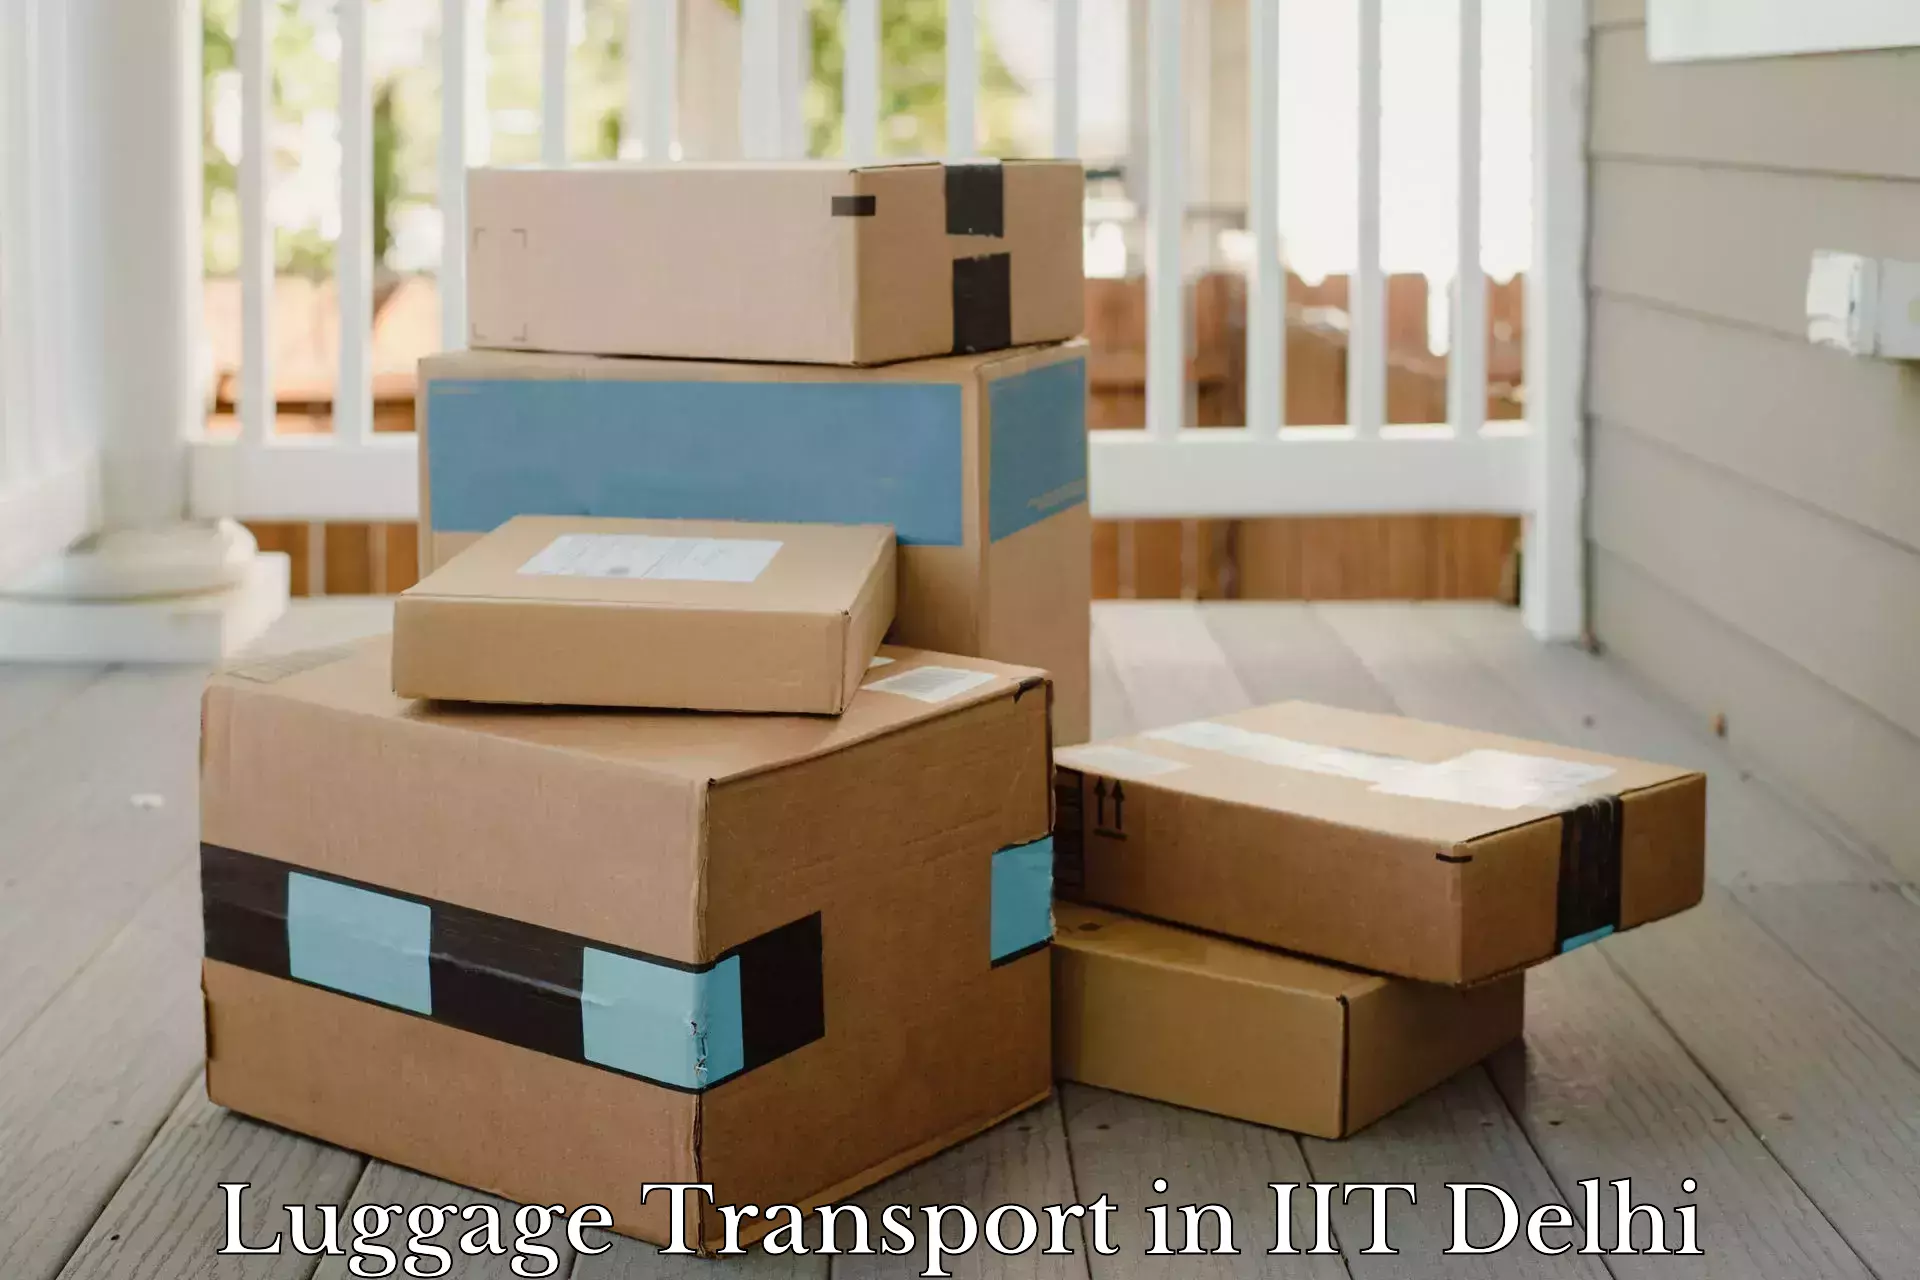 Luggage transport deals in IIT Delhi